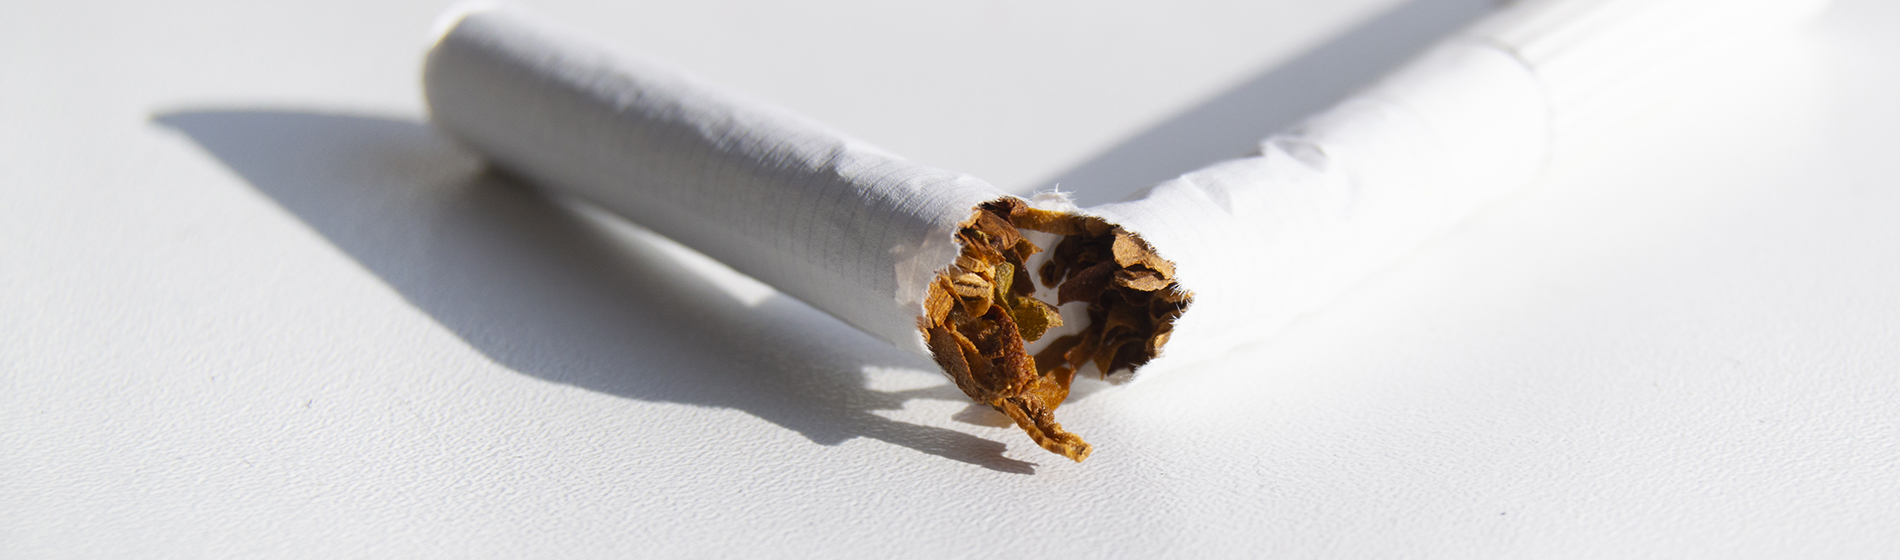 Methode arret tabac